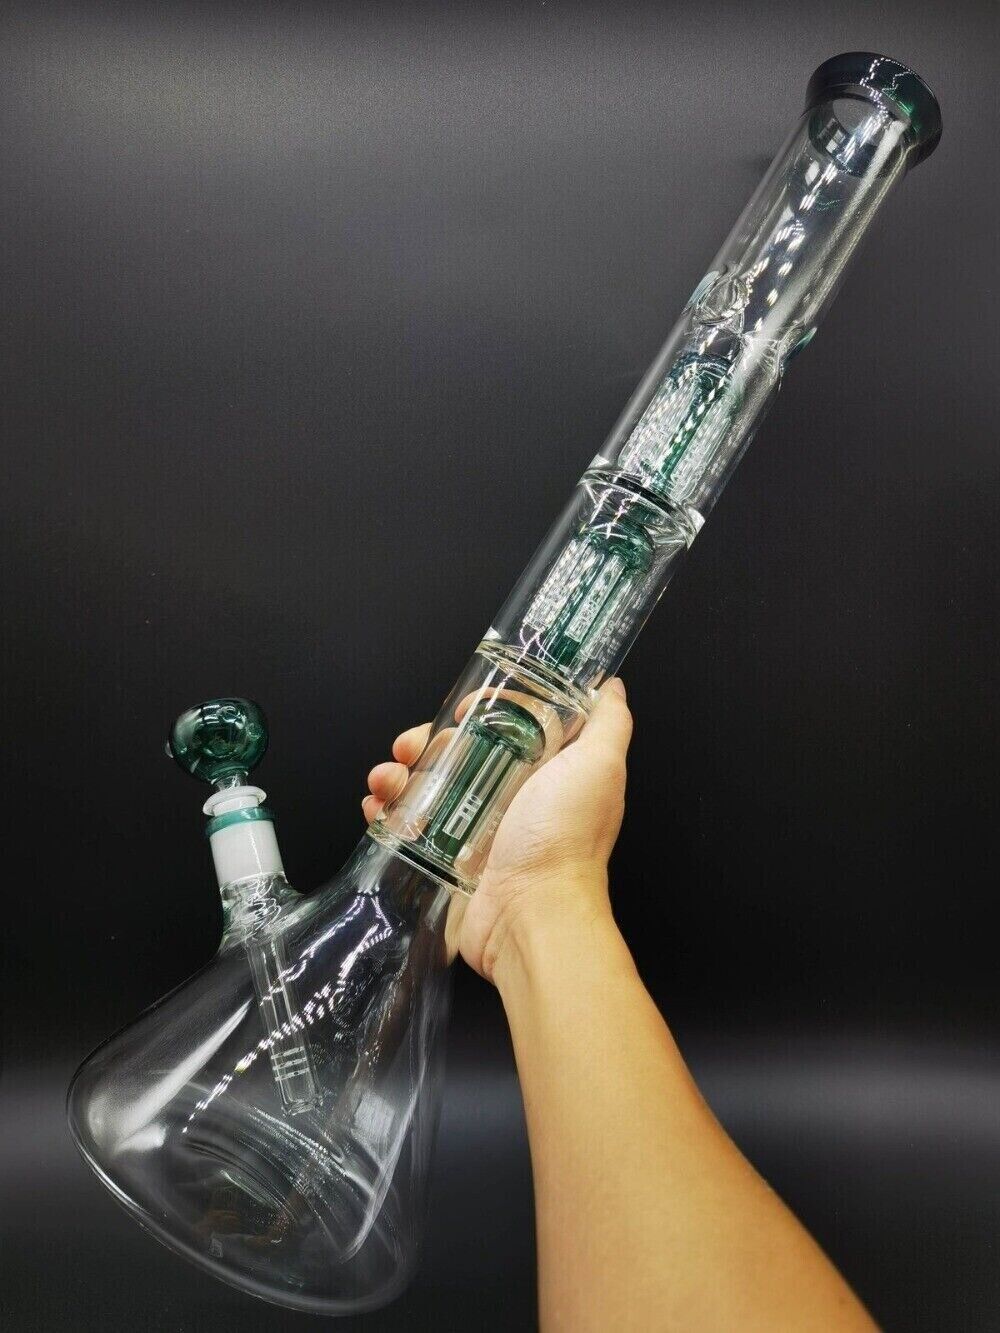 50cm Smoking Hookah Water Pipe Heavy Glass Bong Bubbler Shisha Hand Pipes Green